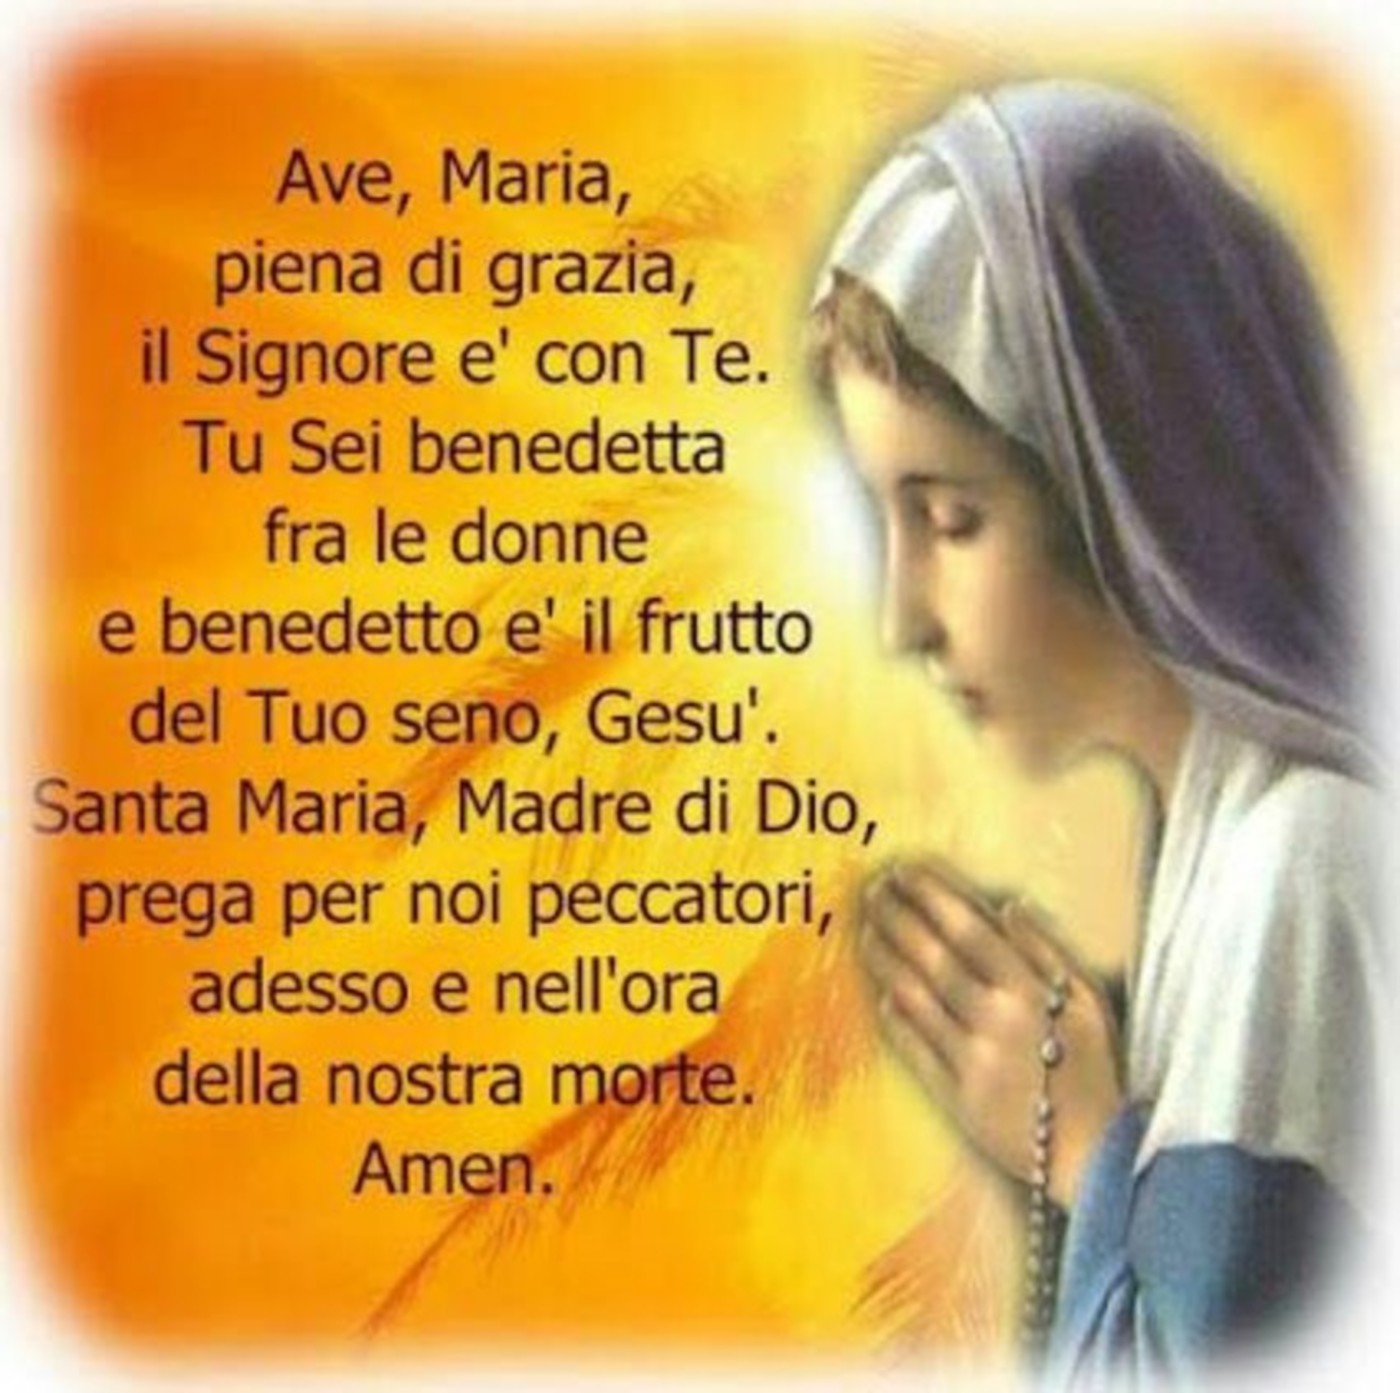 Ave Maria preghiera della sera